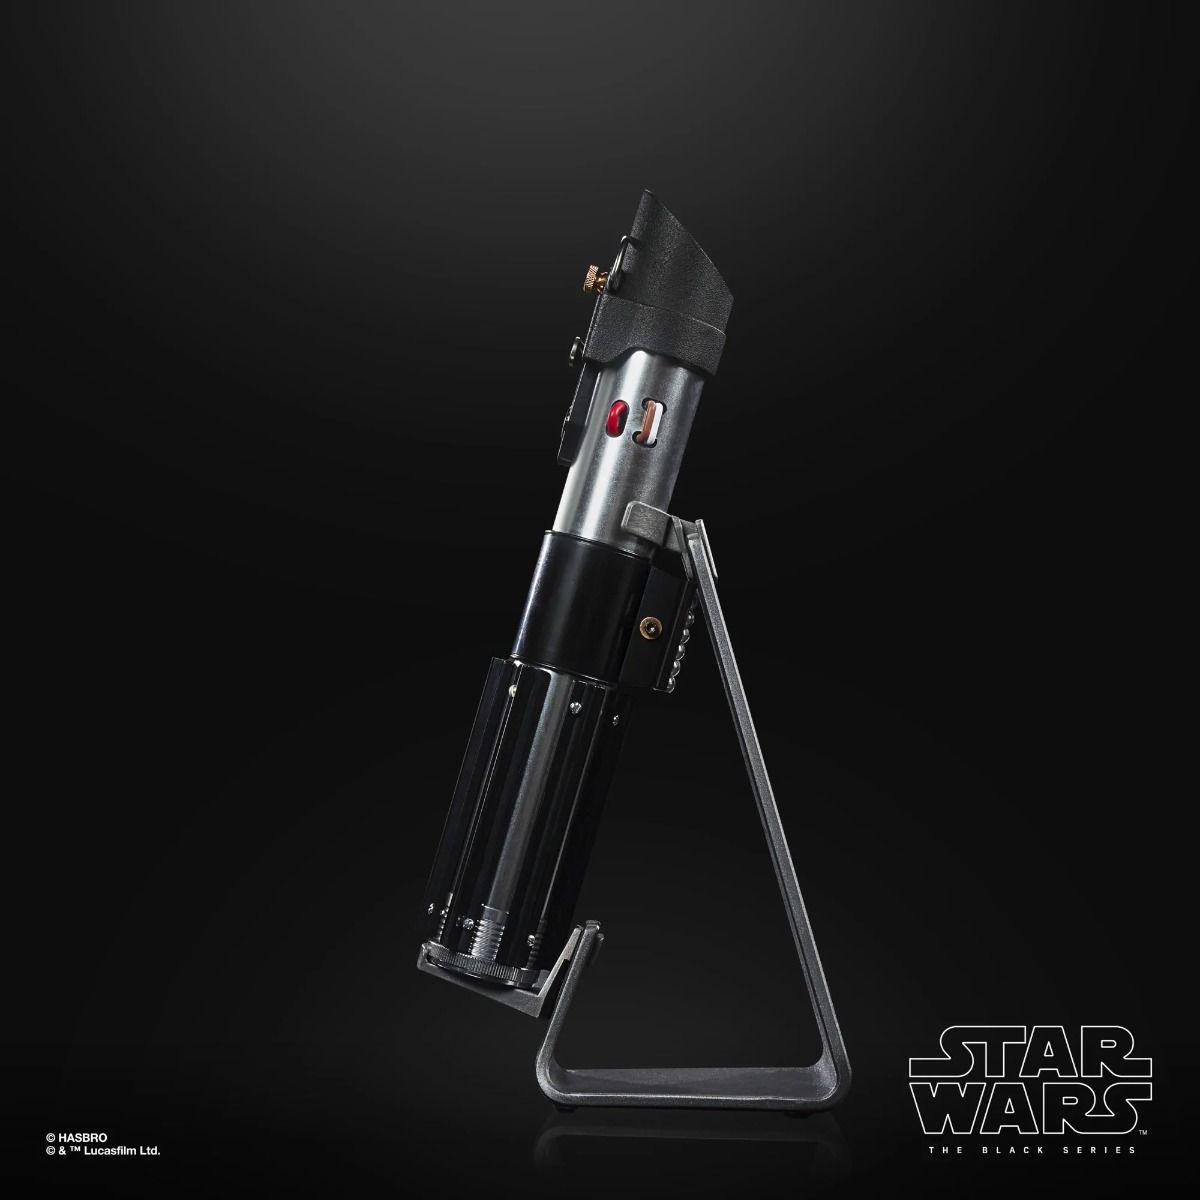 Star Wars The Black Series: Darth Vader Force FX Elite Lightsaber  Hasbro Titan Pop Culture